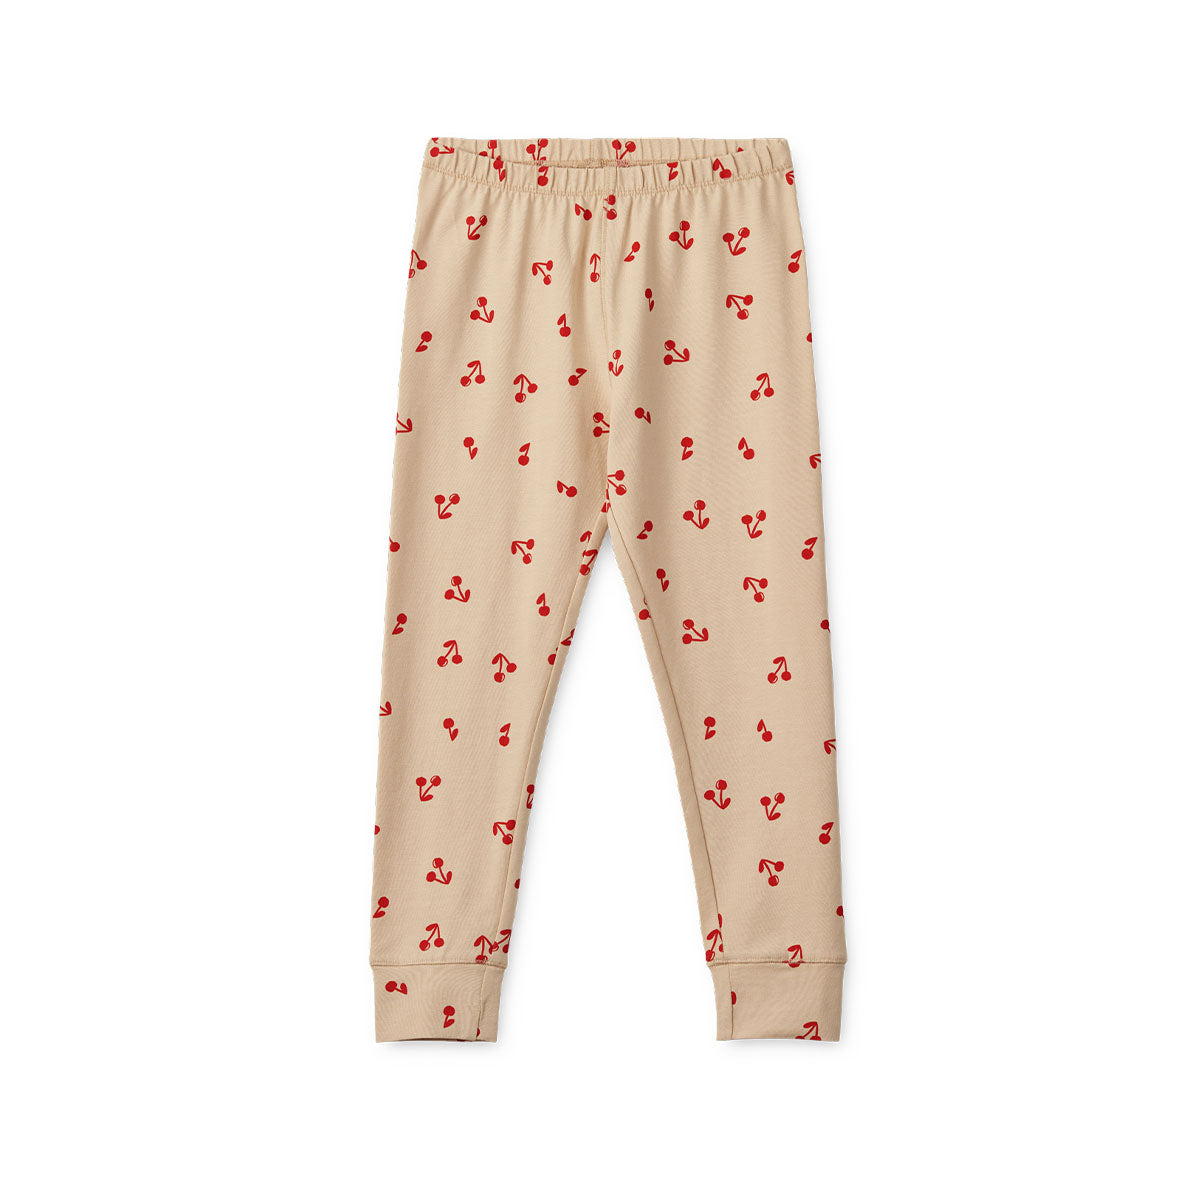 Kijk hoe leuk deze Liewood Wilhelm pyjama cherries/apple blossom is!  Deze leuke kinderpyjama is beige en heeft een print met schattige rode kersen. De stof van de pyjama is gemaakt van 95% biologisch katoen. Dat maakt het extra zacht voor de huid. VanZus